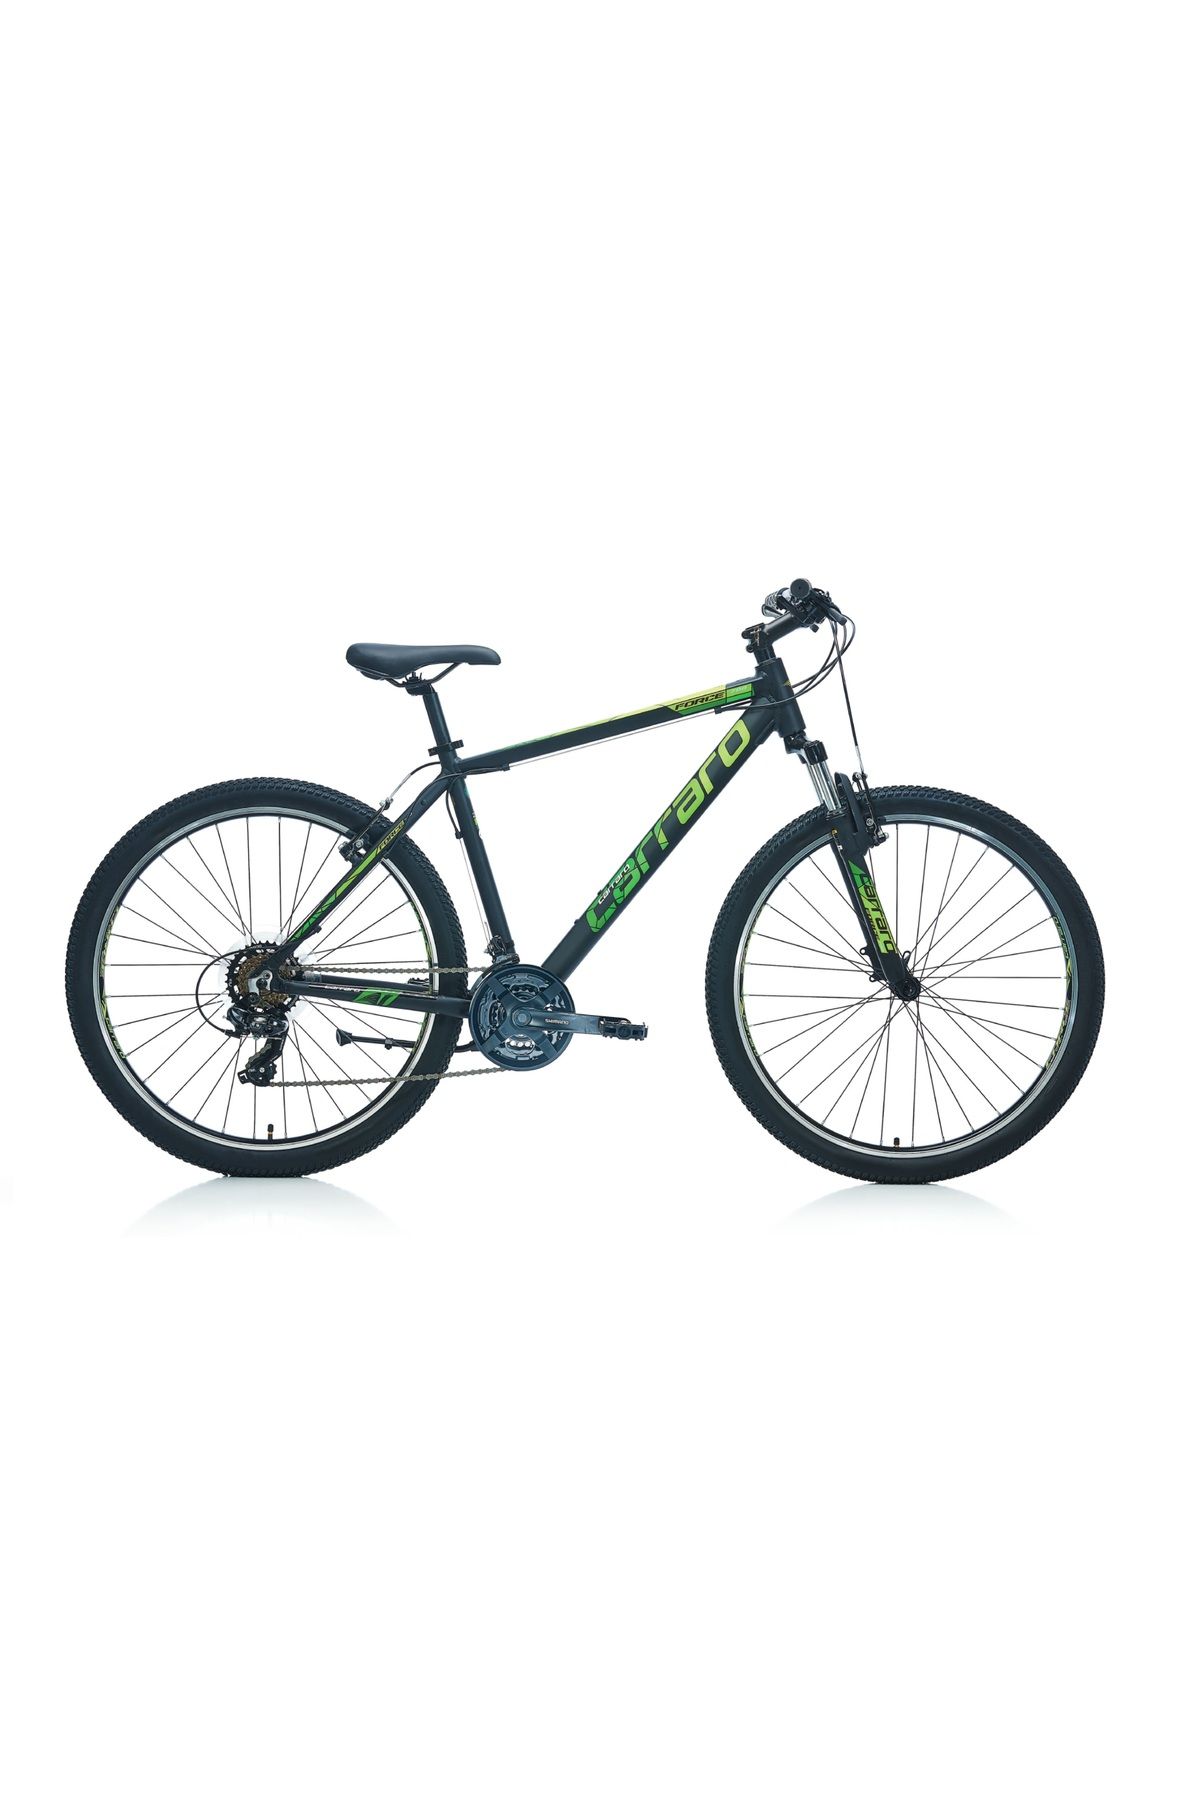 Carraro Force 700 27,5 Jant 38cm 21 Vites Erkek Dağ Bisikleti Mat Siyah-yeşil